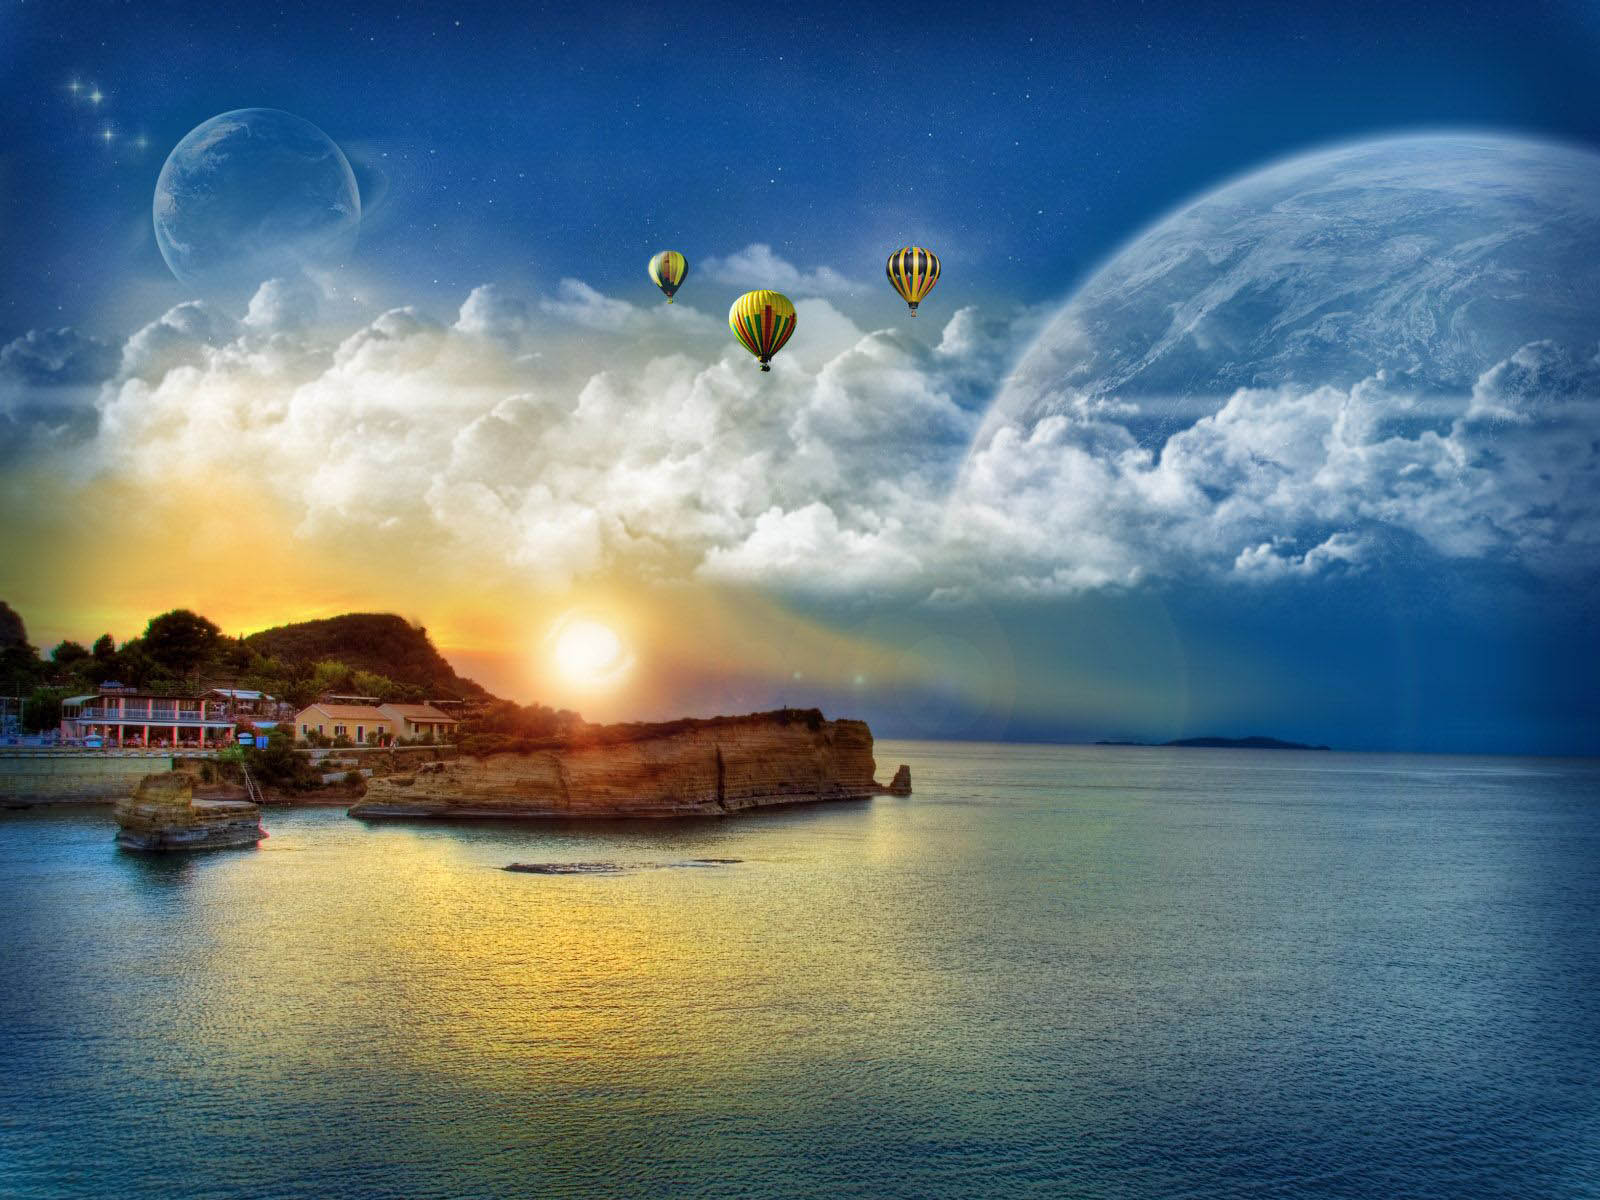 Best Fantasy Beach Landscape Wallpaper Hd - Hot Air Balloons Over Ocean - HD Wallpaper 